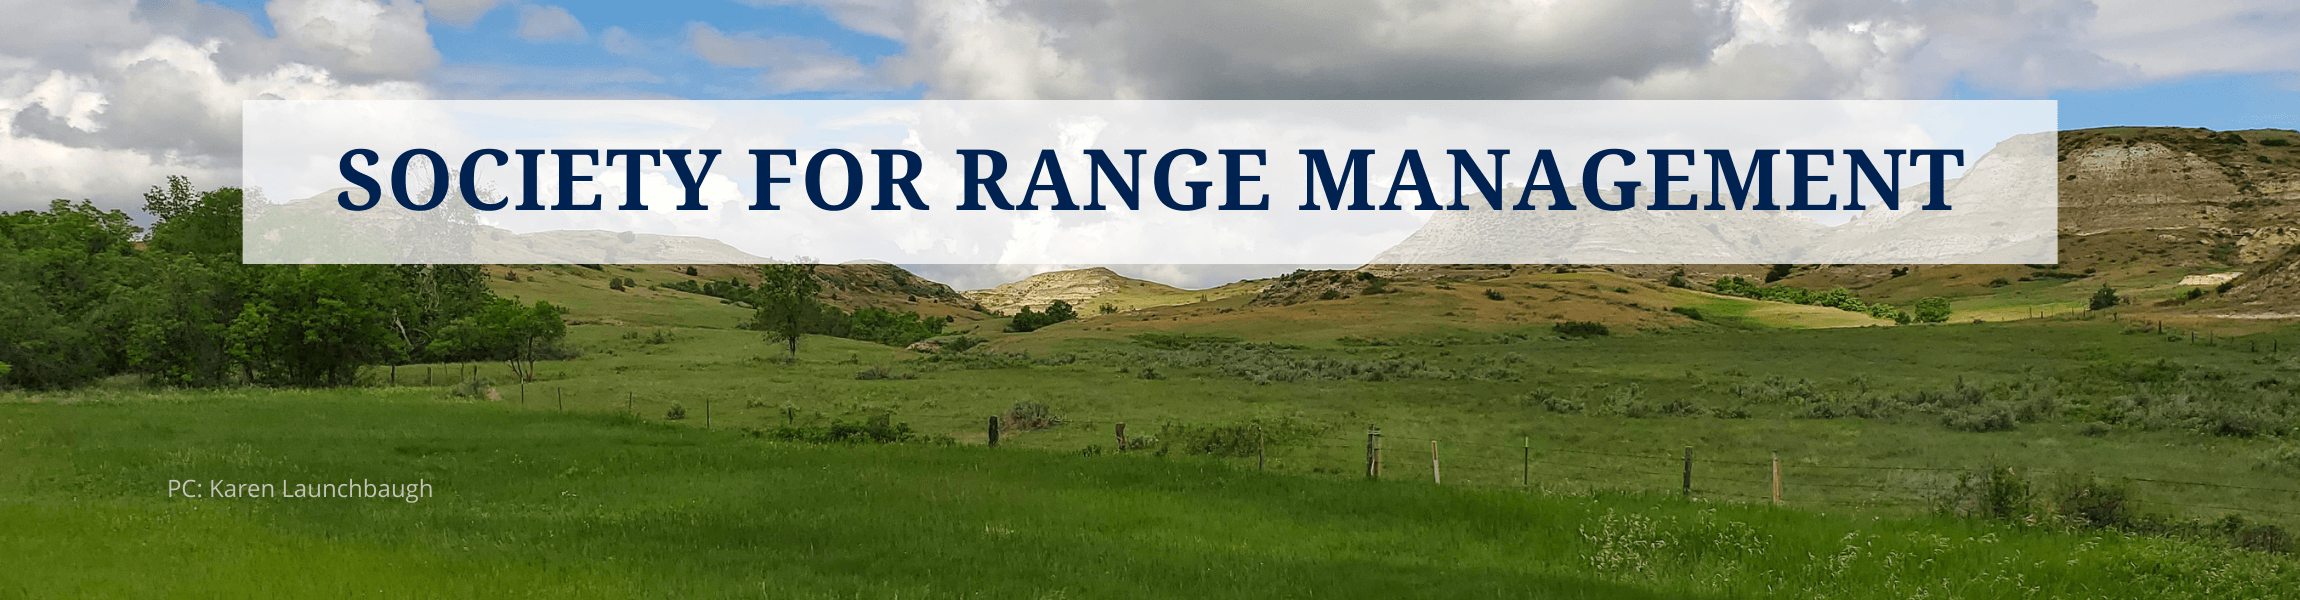 Society For Range Management